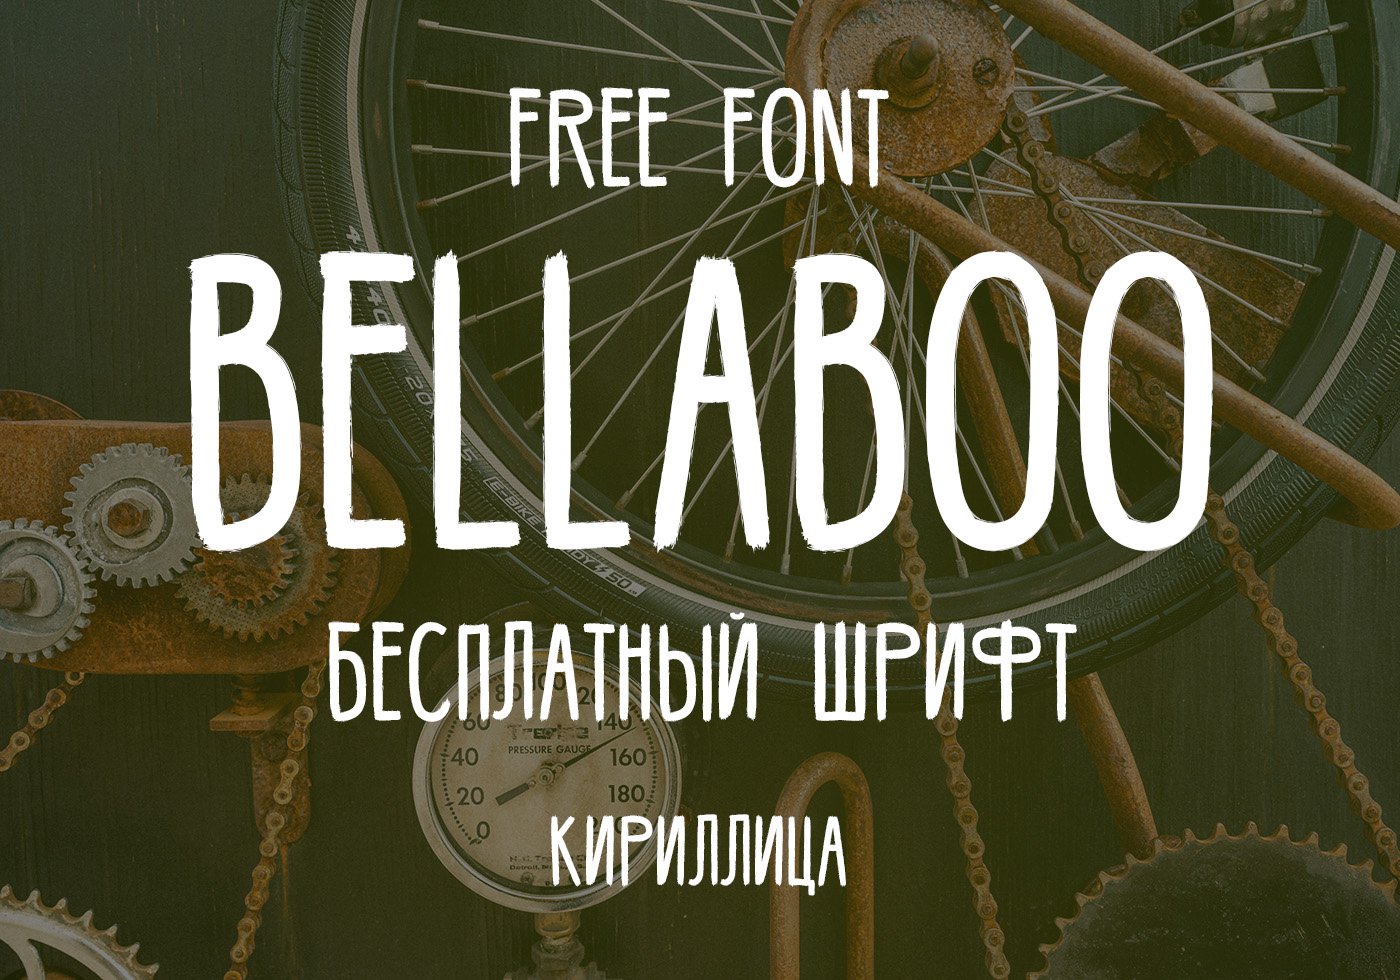 Хипстерский рукописный шрифт BELLABOO с кириллицей.